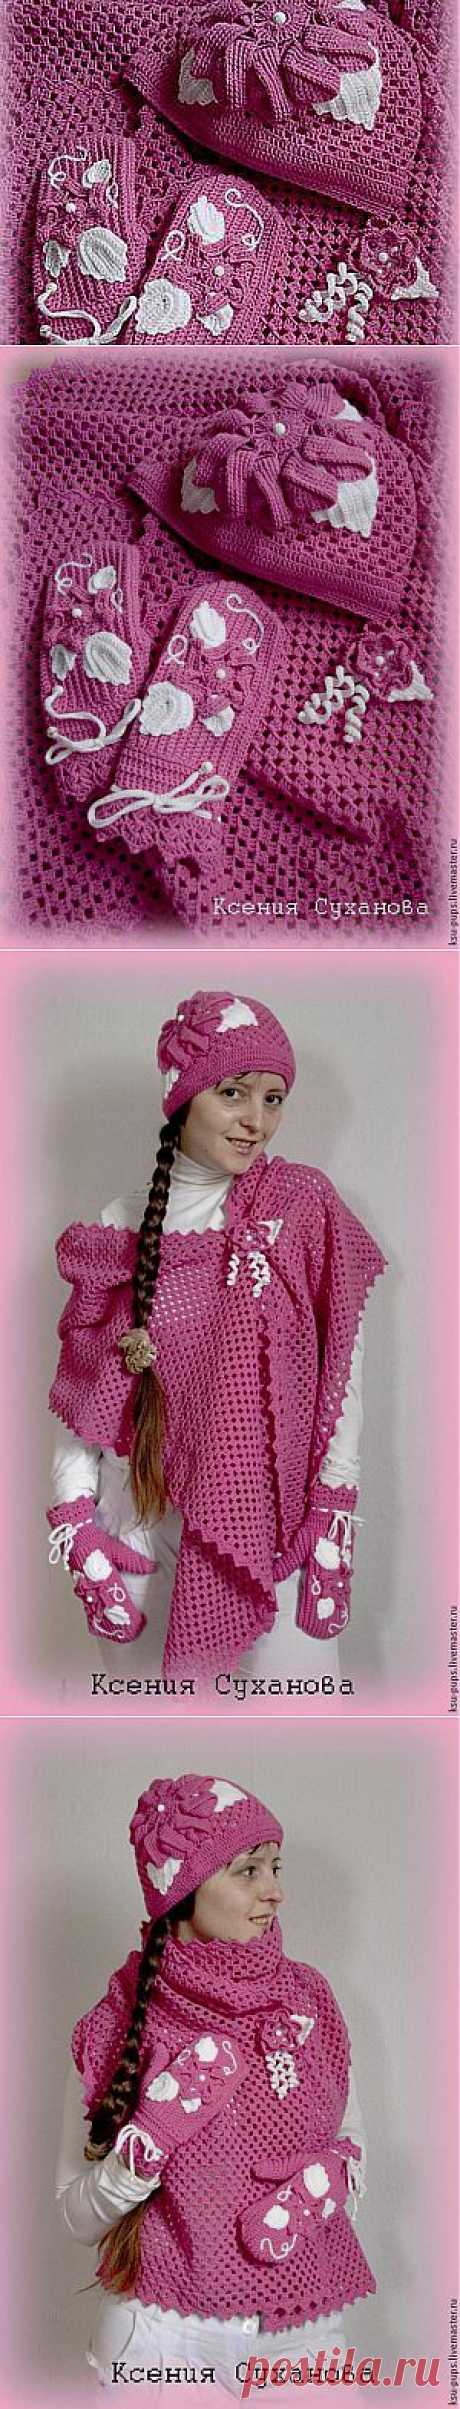 Мастер-класс: розовый комплект (шапка, варежки, шарф) - Ярмарка Мастеров - ручная работа, handmade